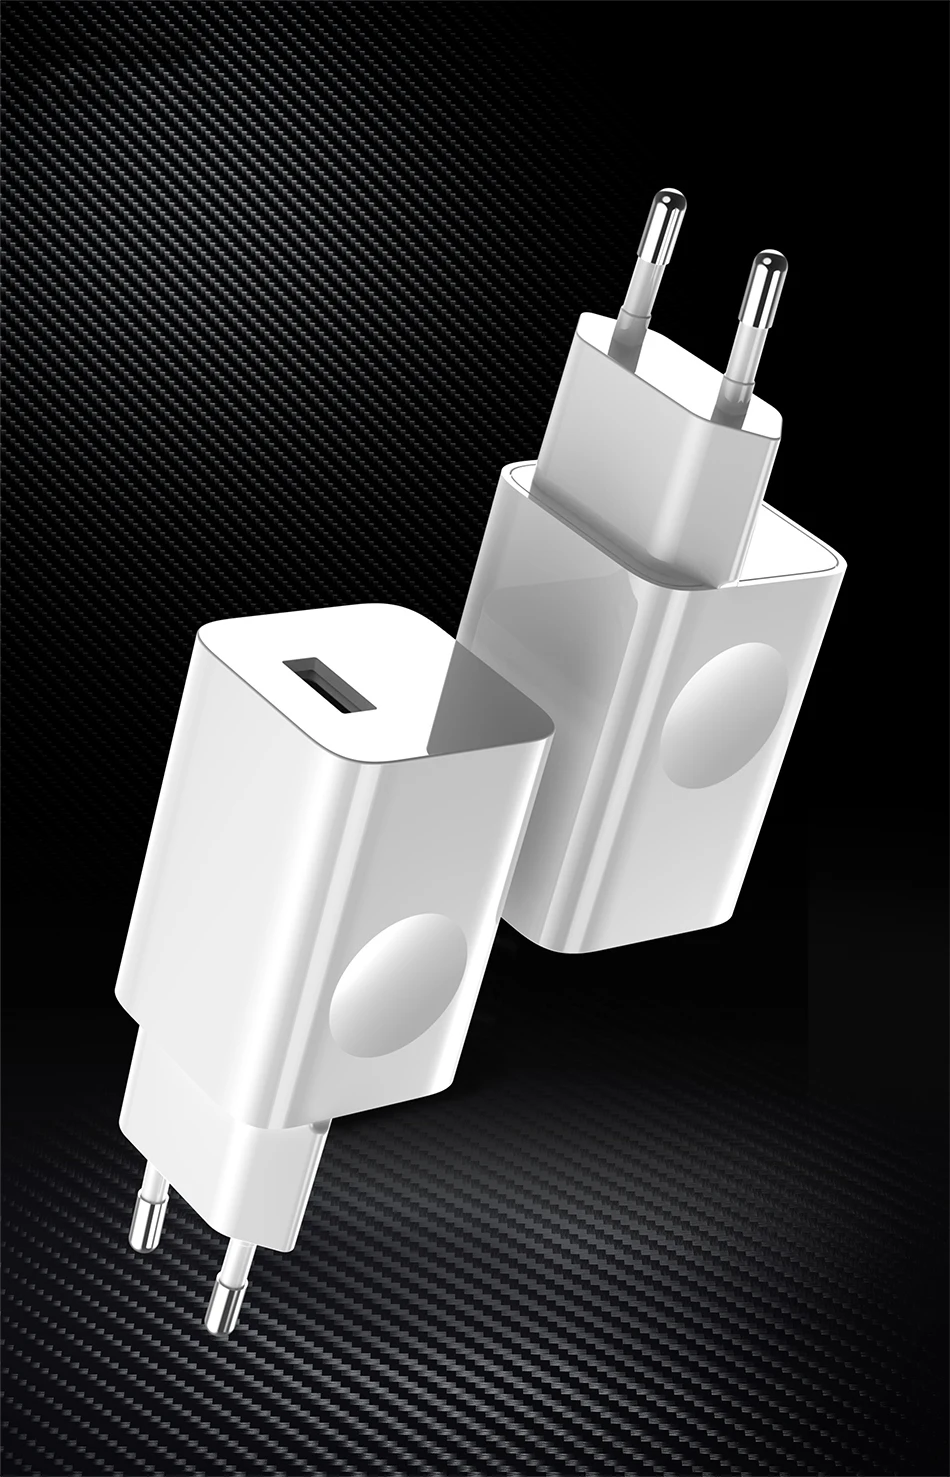 ITUF один провод быстрое зарядное устройство 5V2. 0A зарядное устройство для мобильного телефона UE USB зарядное устройство для samsung Xiaomi iPhone huawei